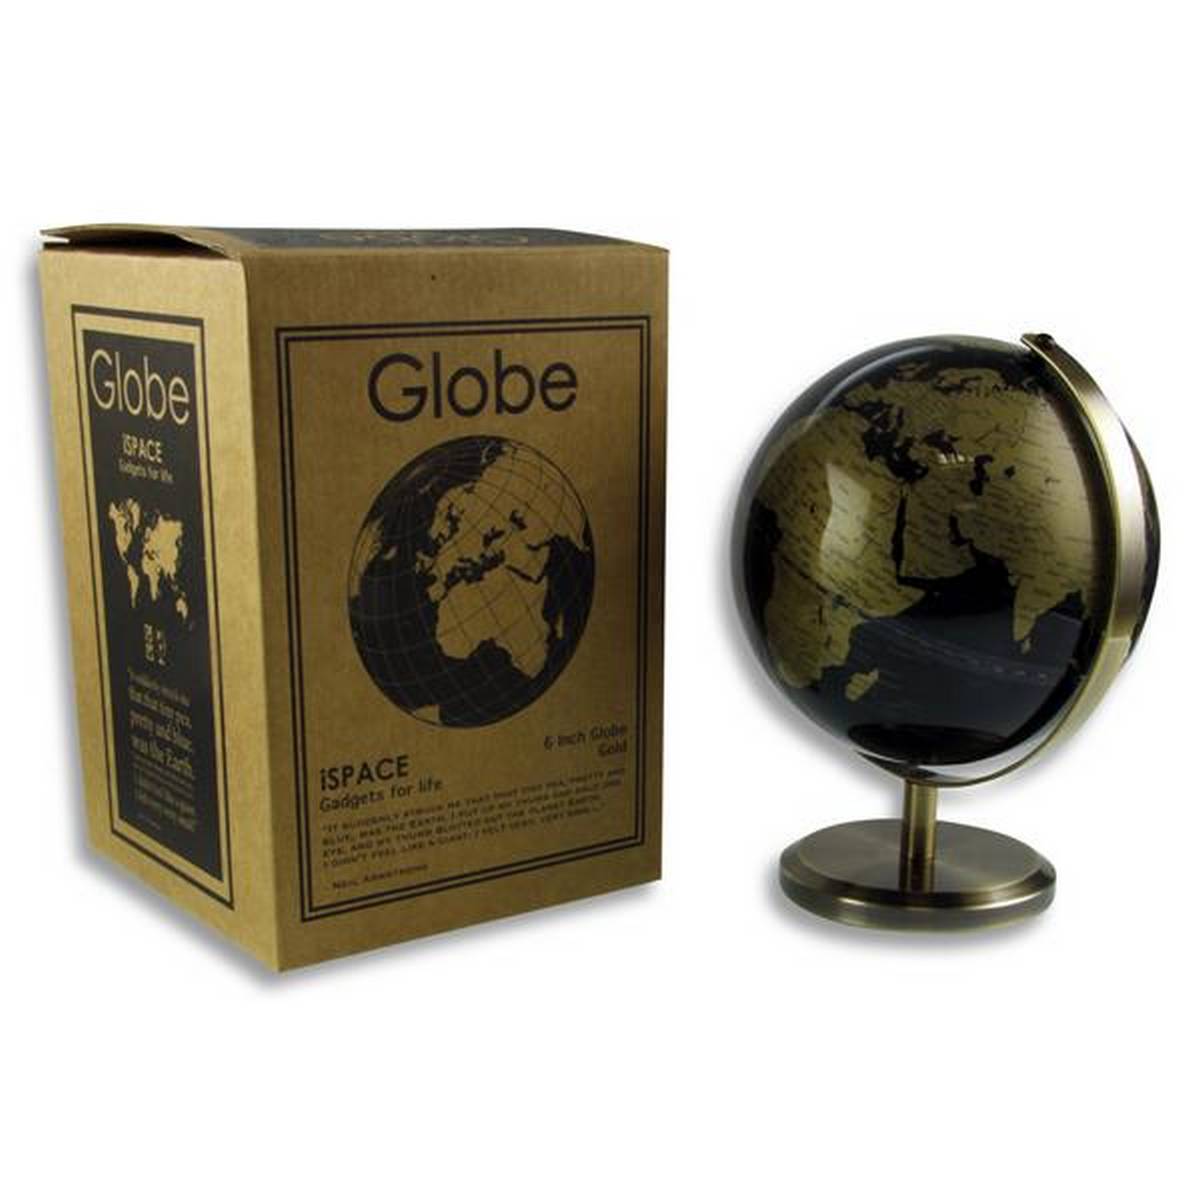 iSpace Mini Globe 6" Gold